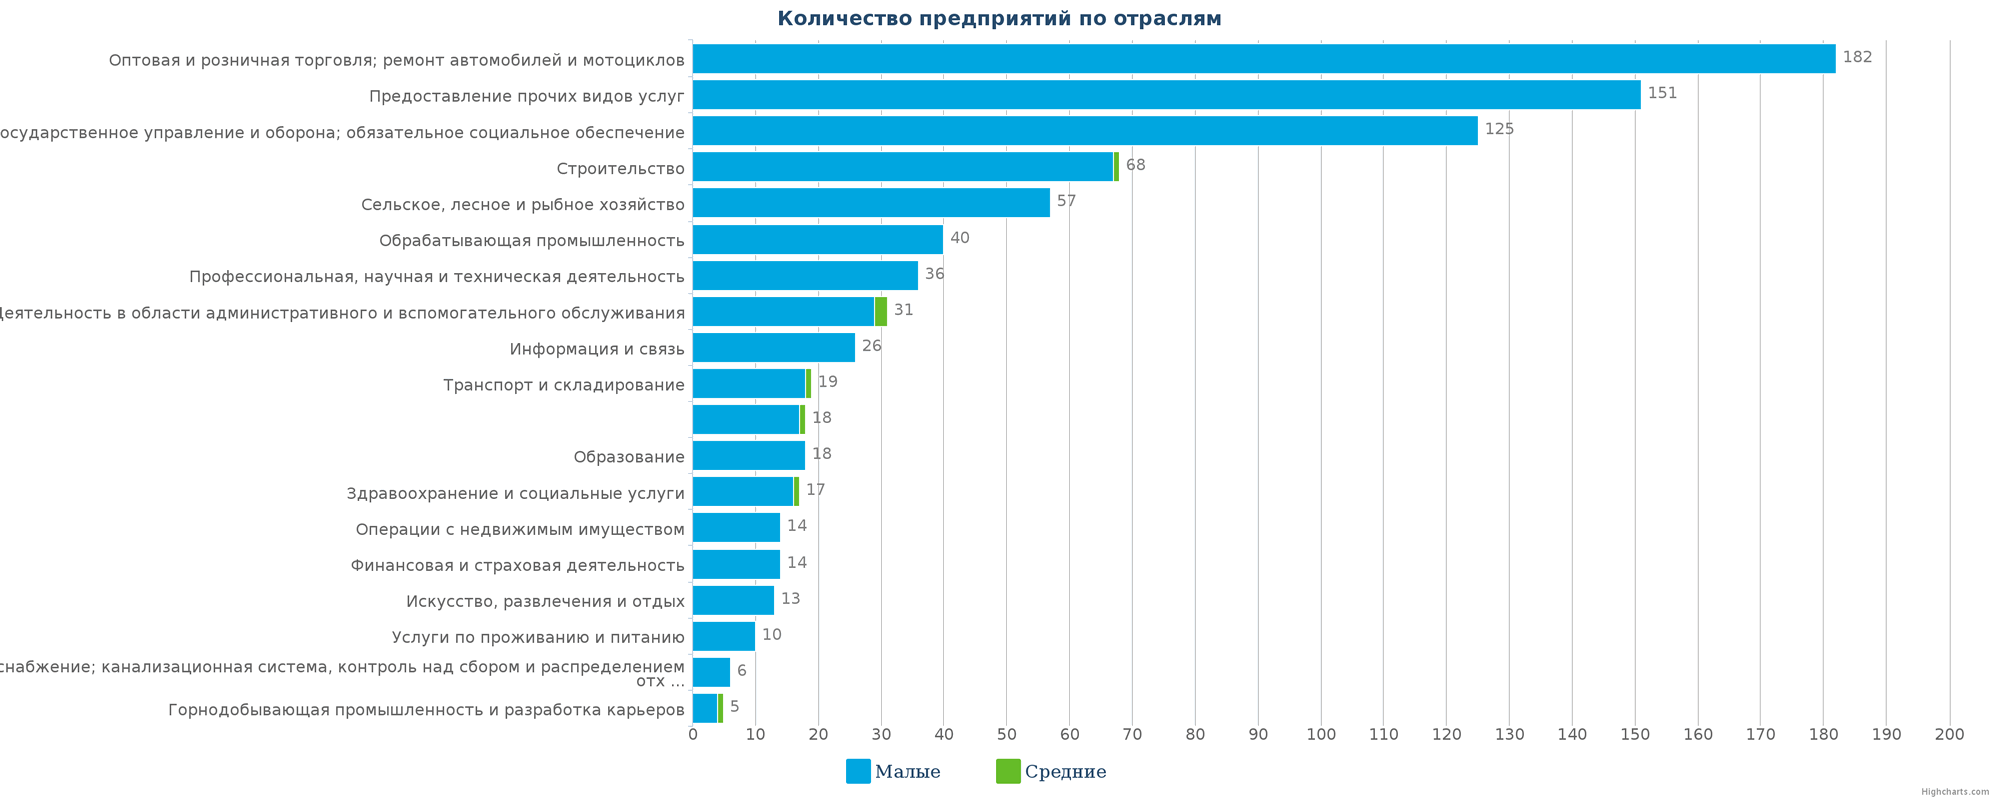 Новые компании в реестре Казахстана